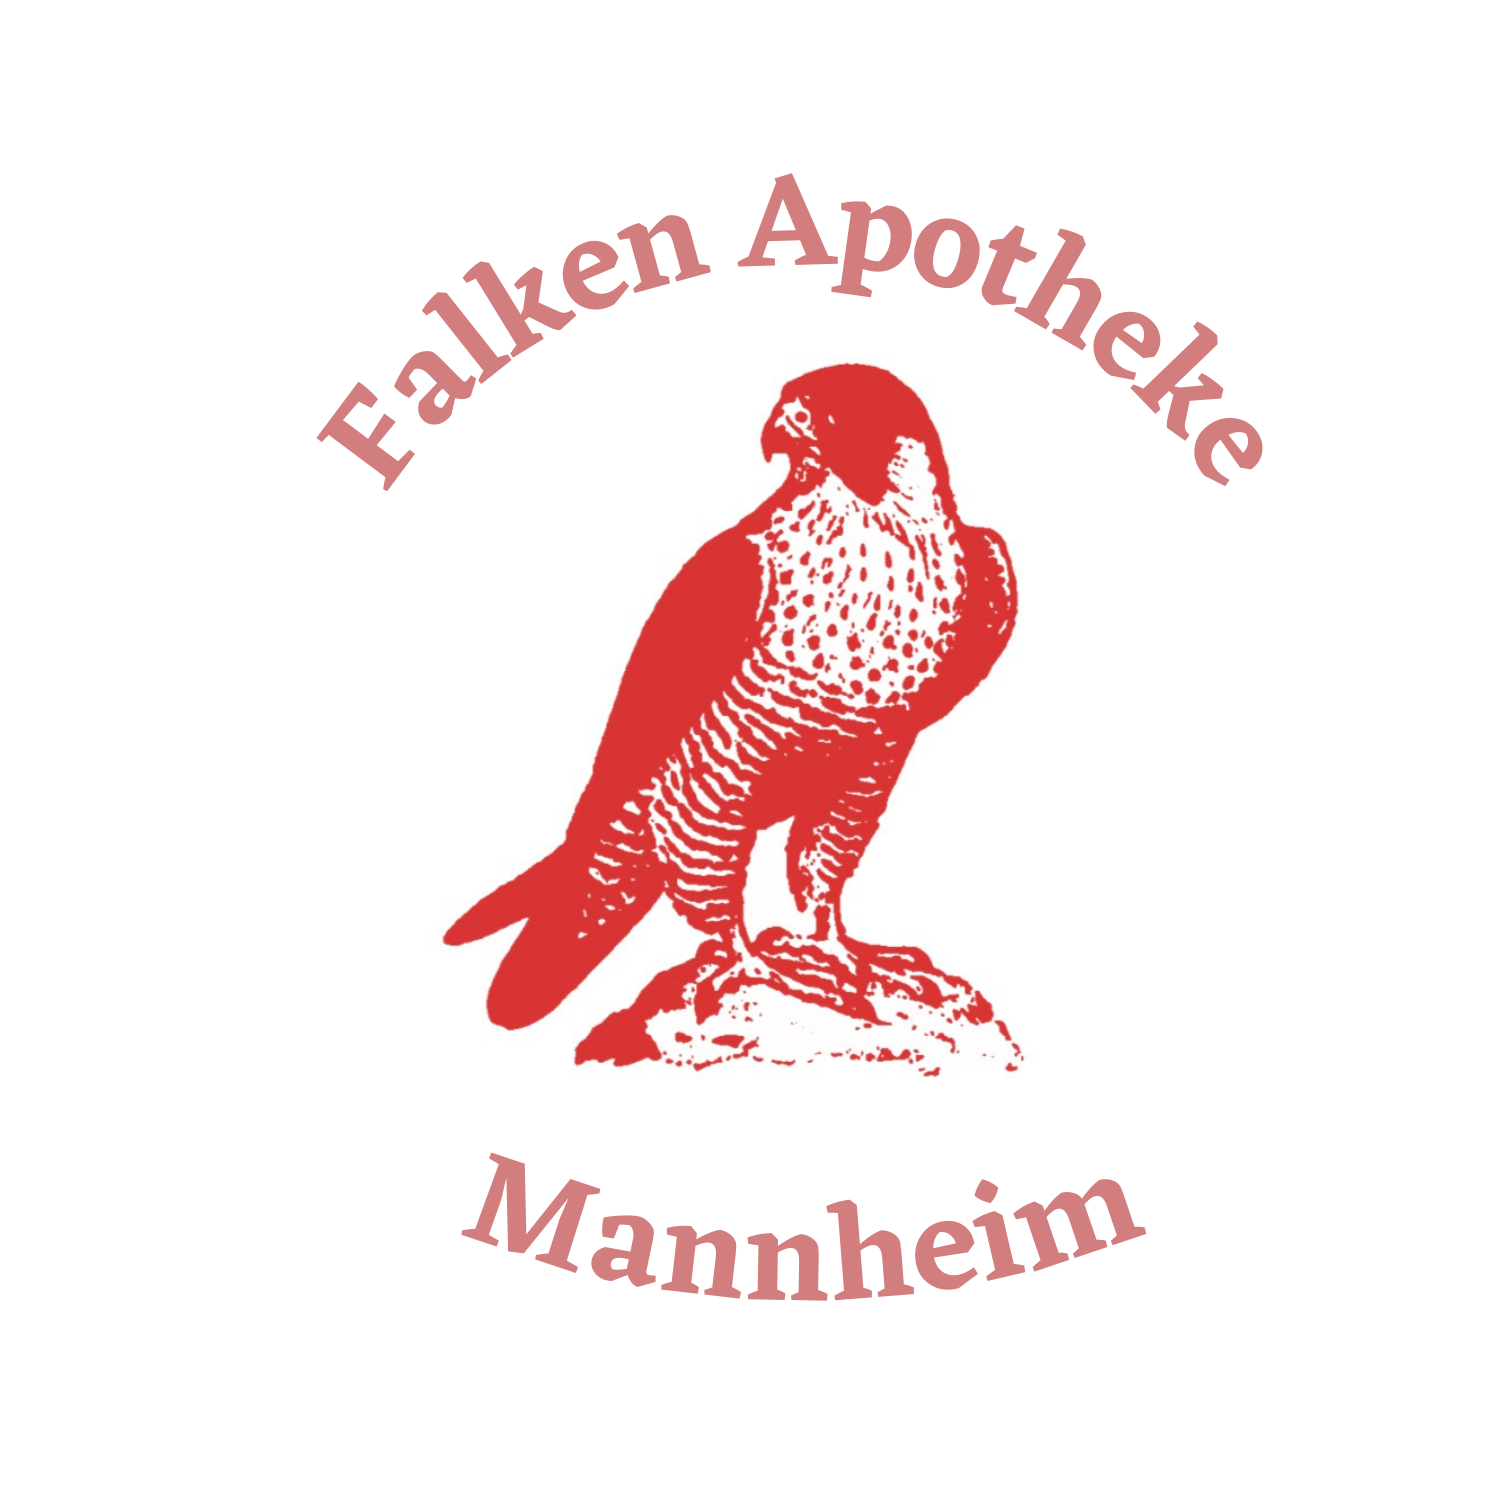 Logo Falken-Apotheke